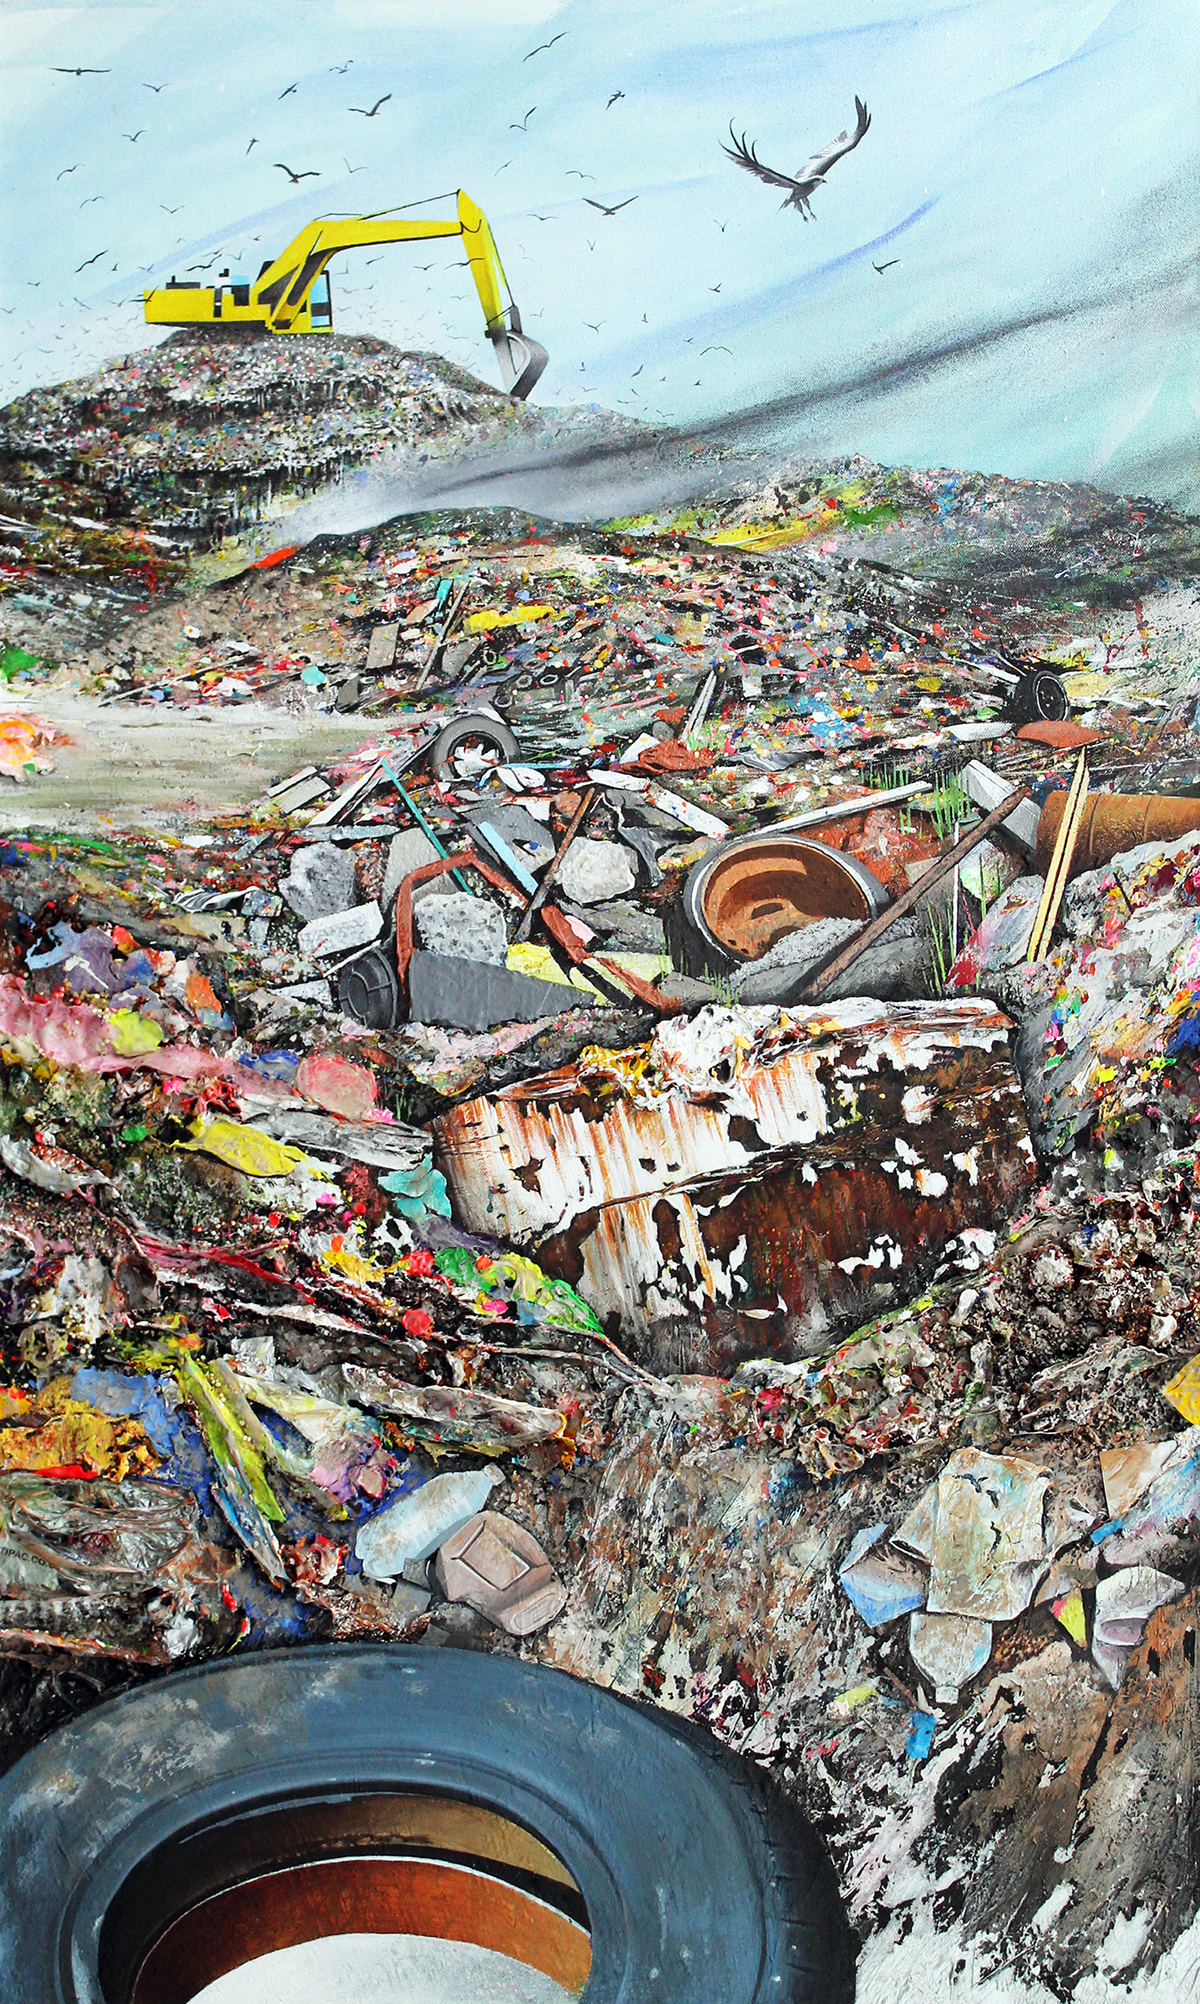 landfill rubbish Dump waste refuse